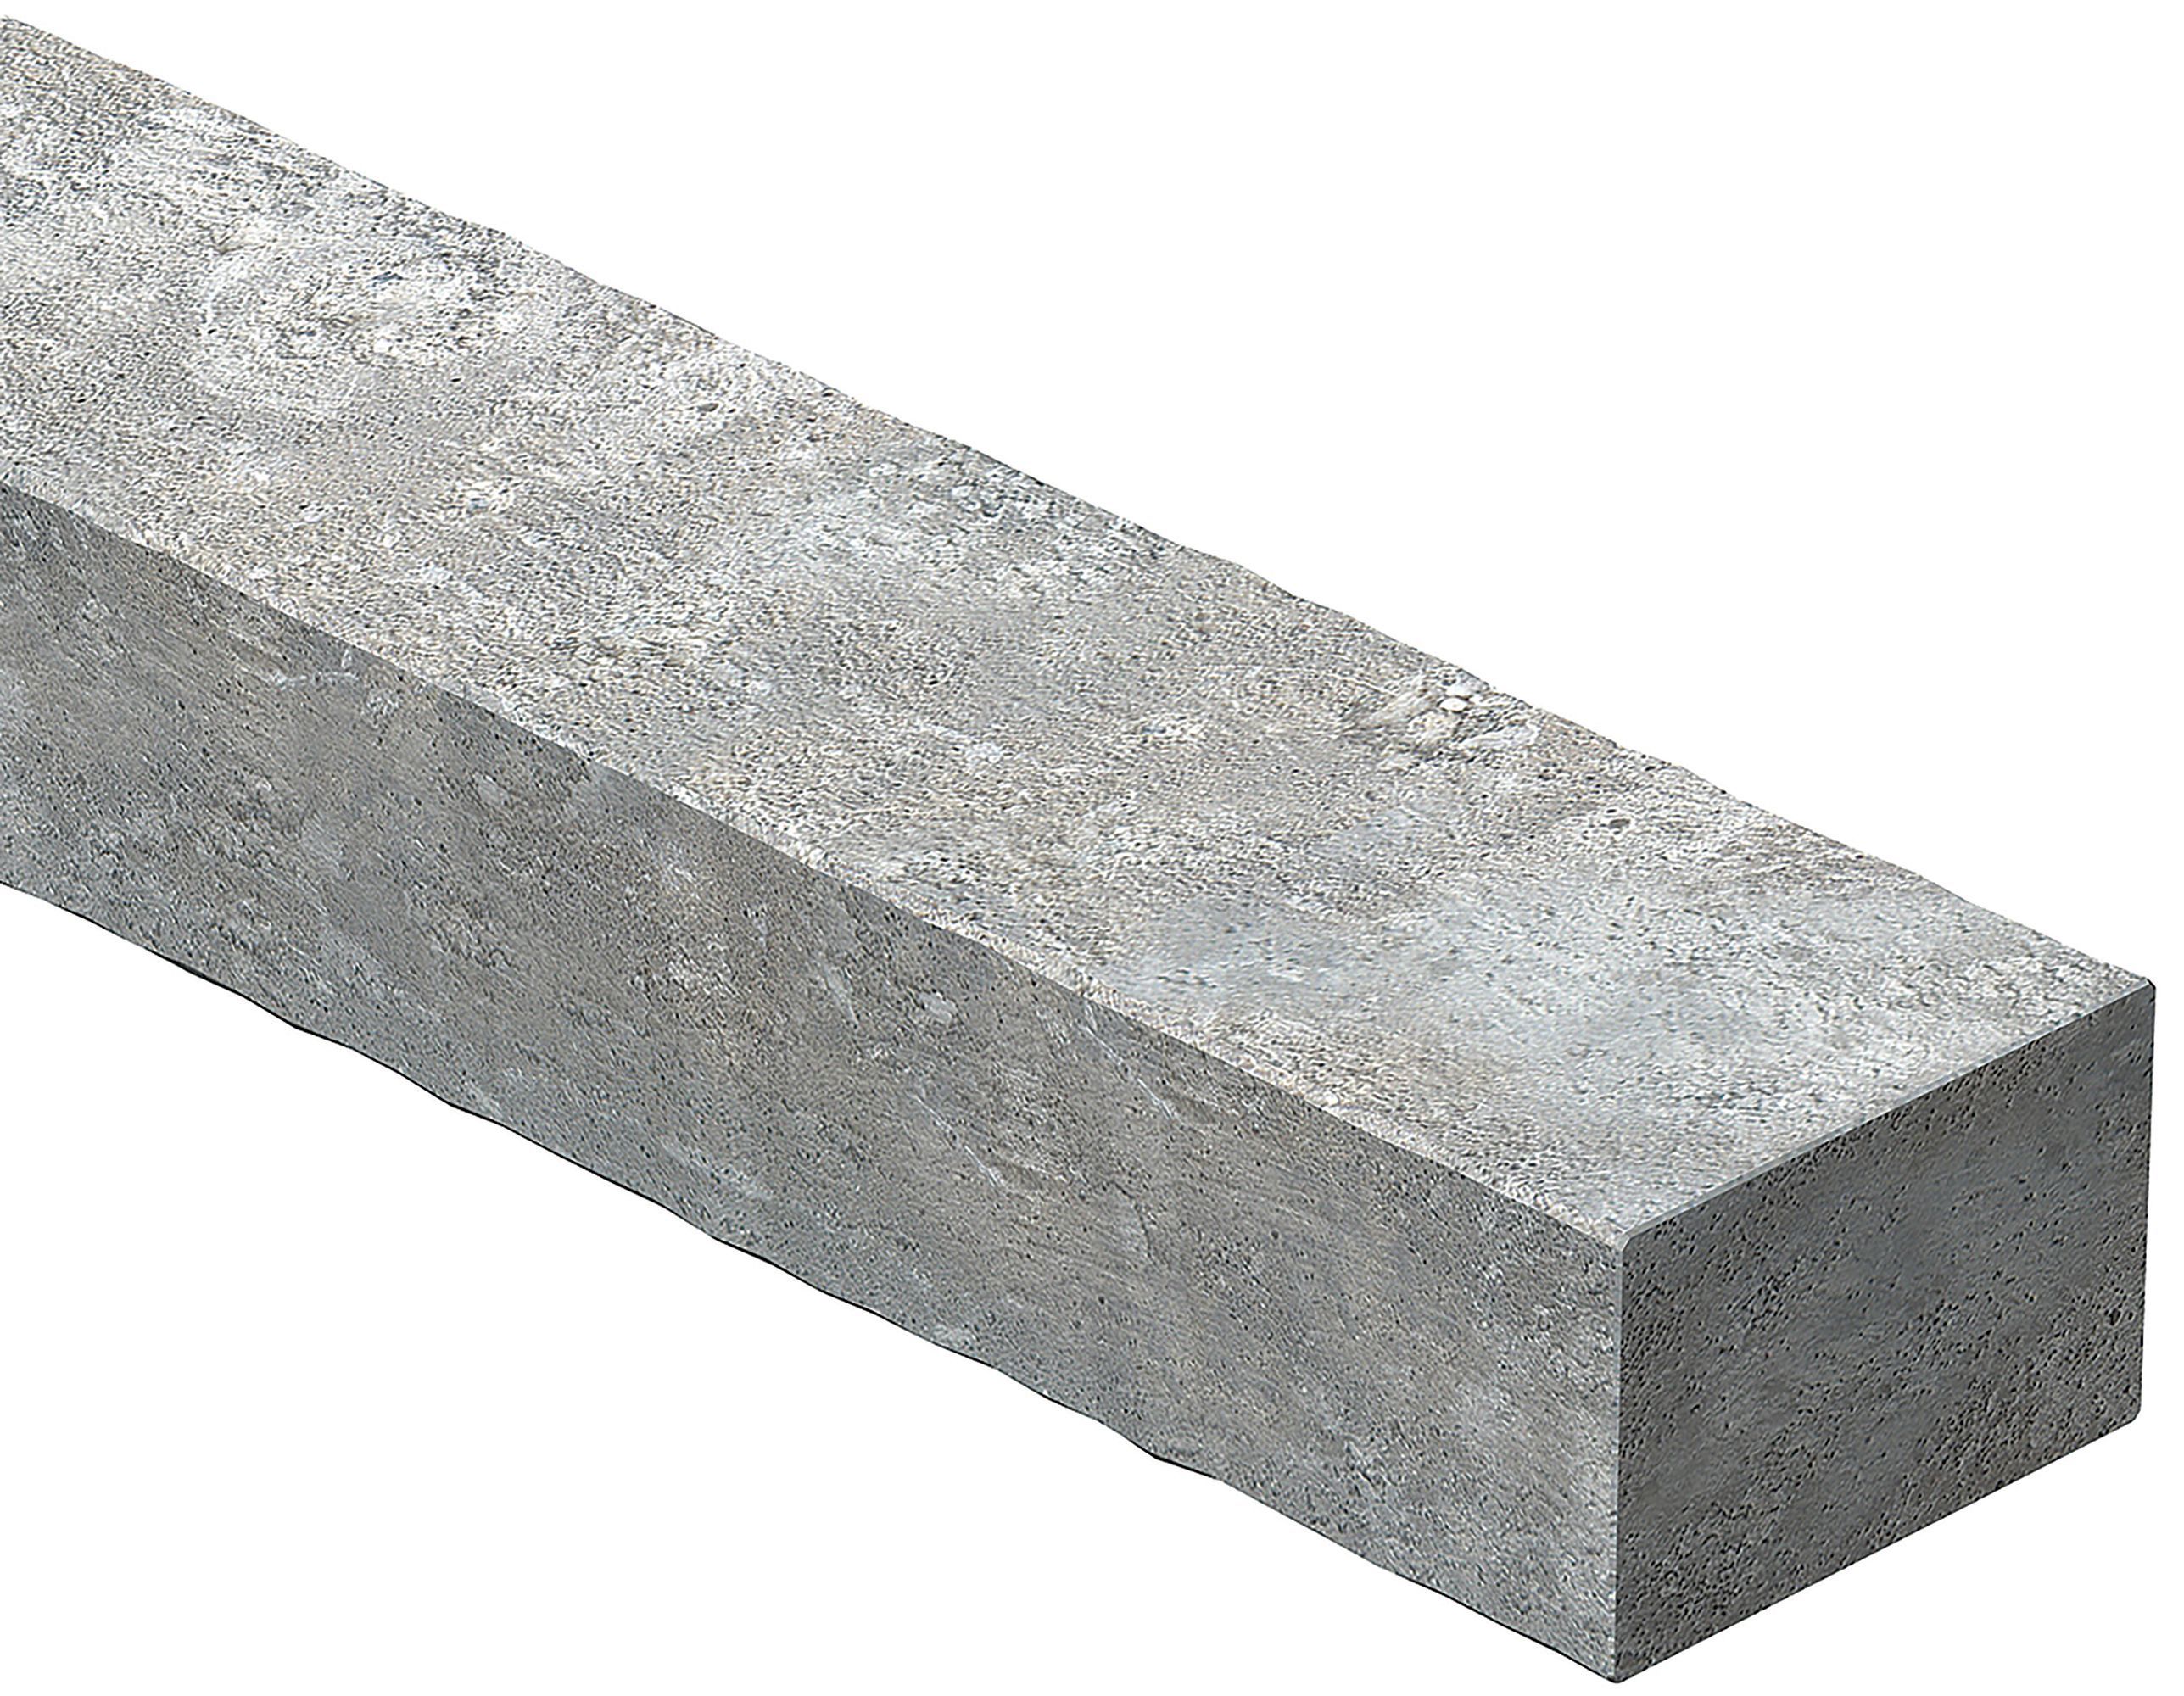 Expamet Concrete Lintel, (L)1200mm (W)100mm